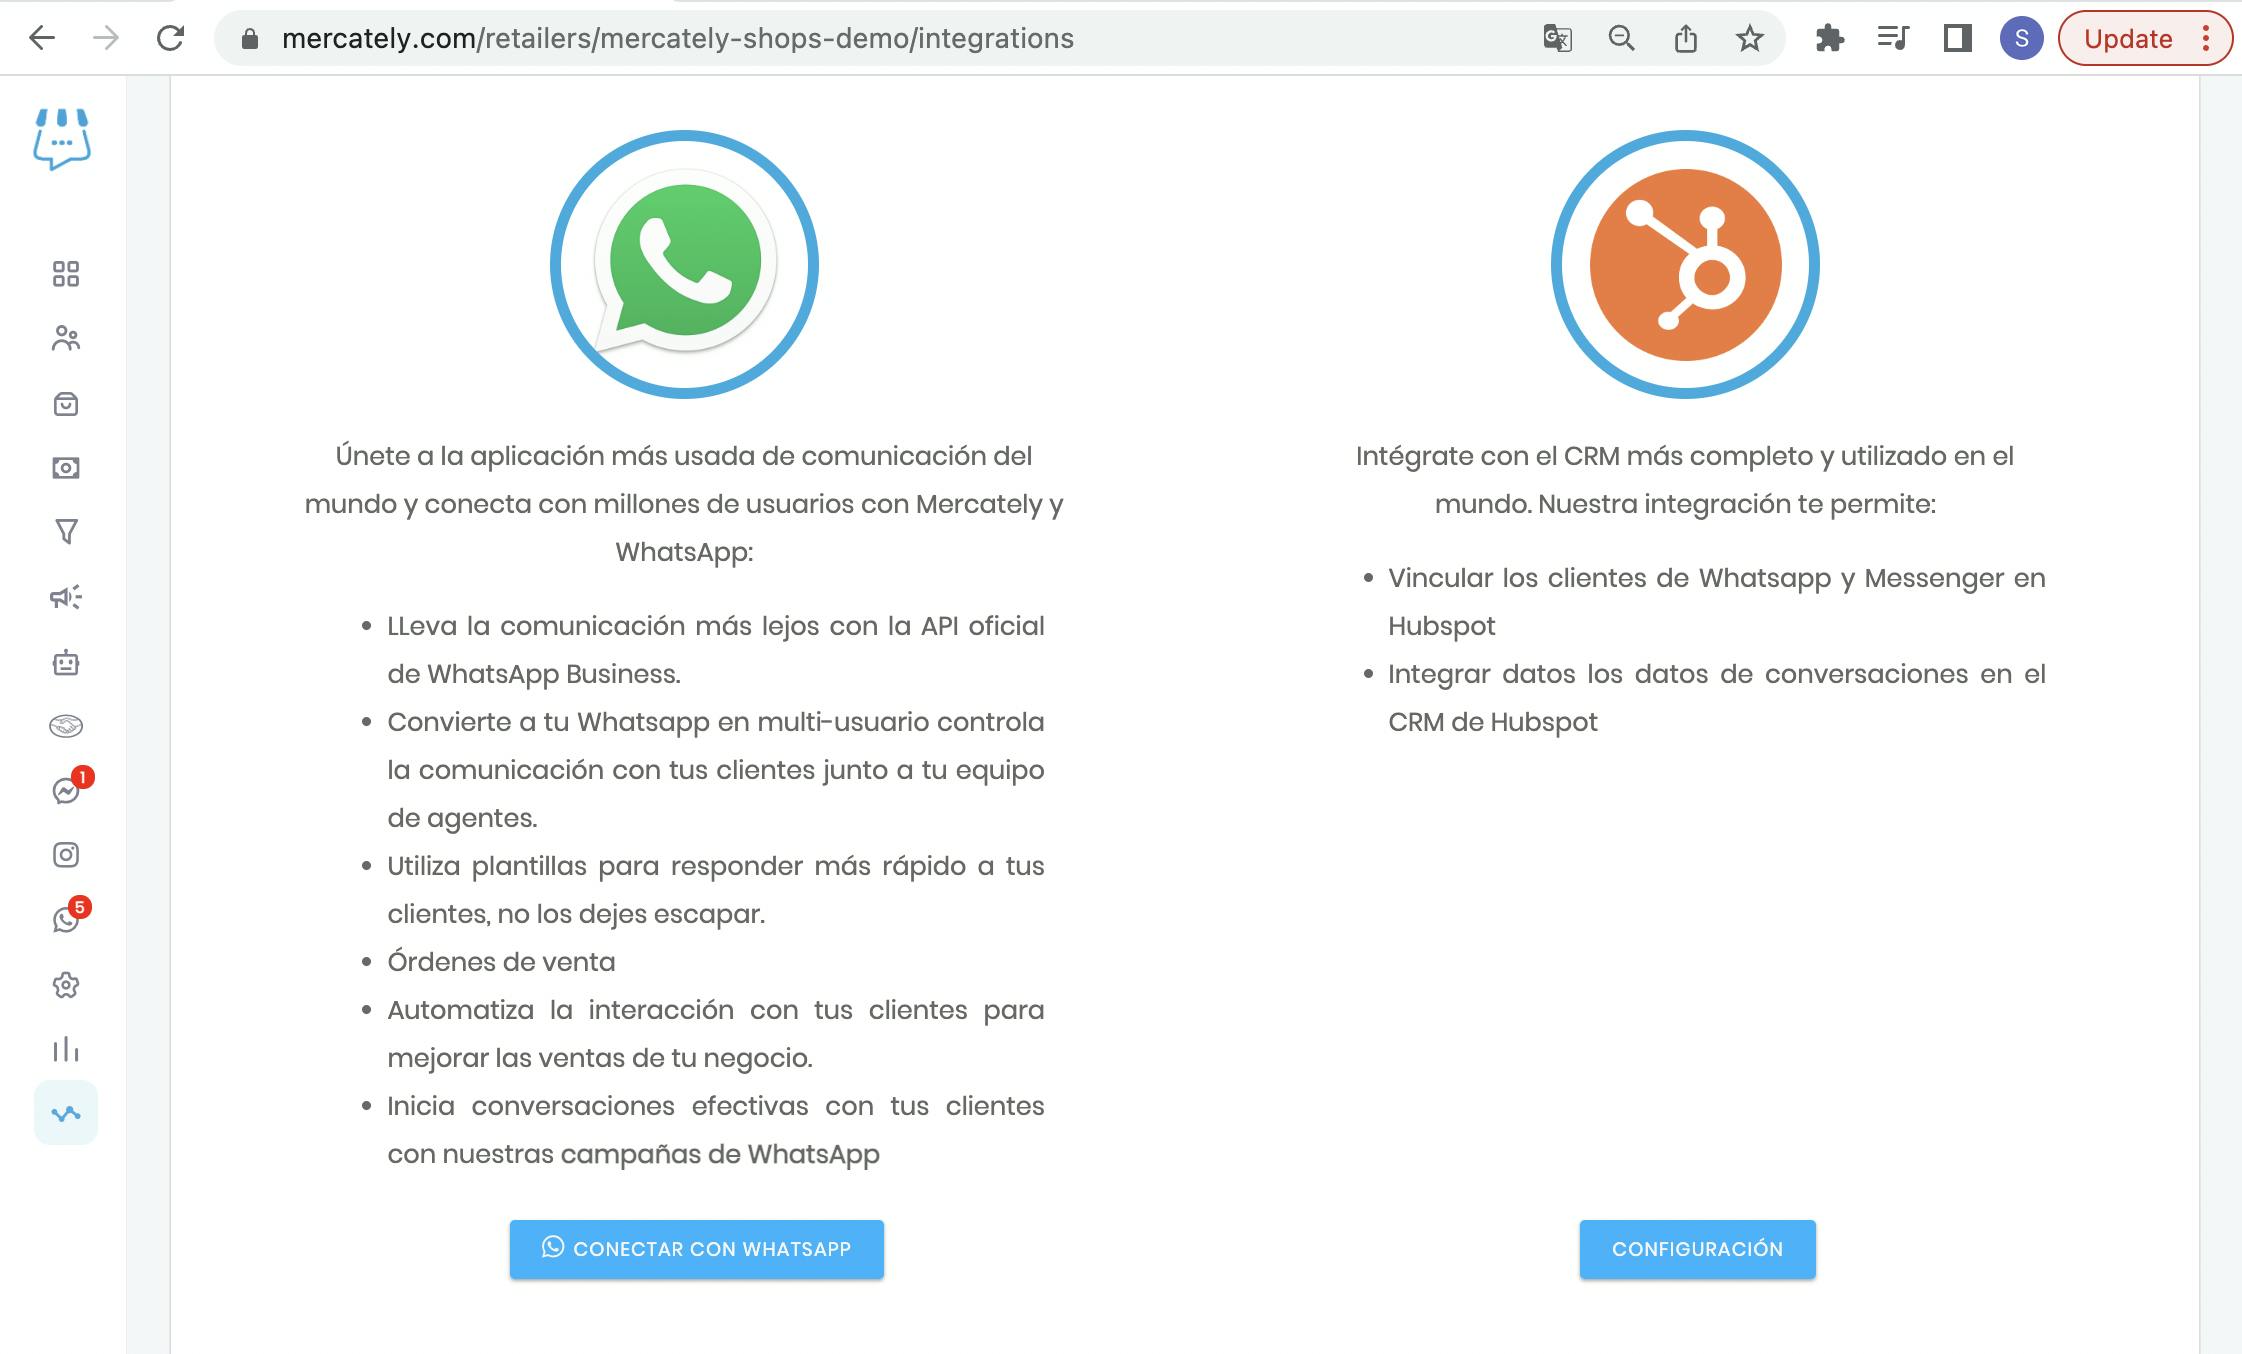 whatsapp y hubspot integrados